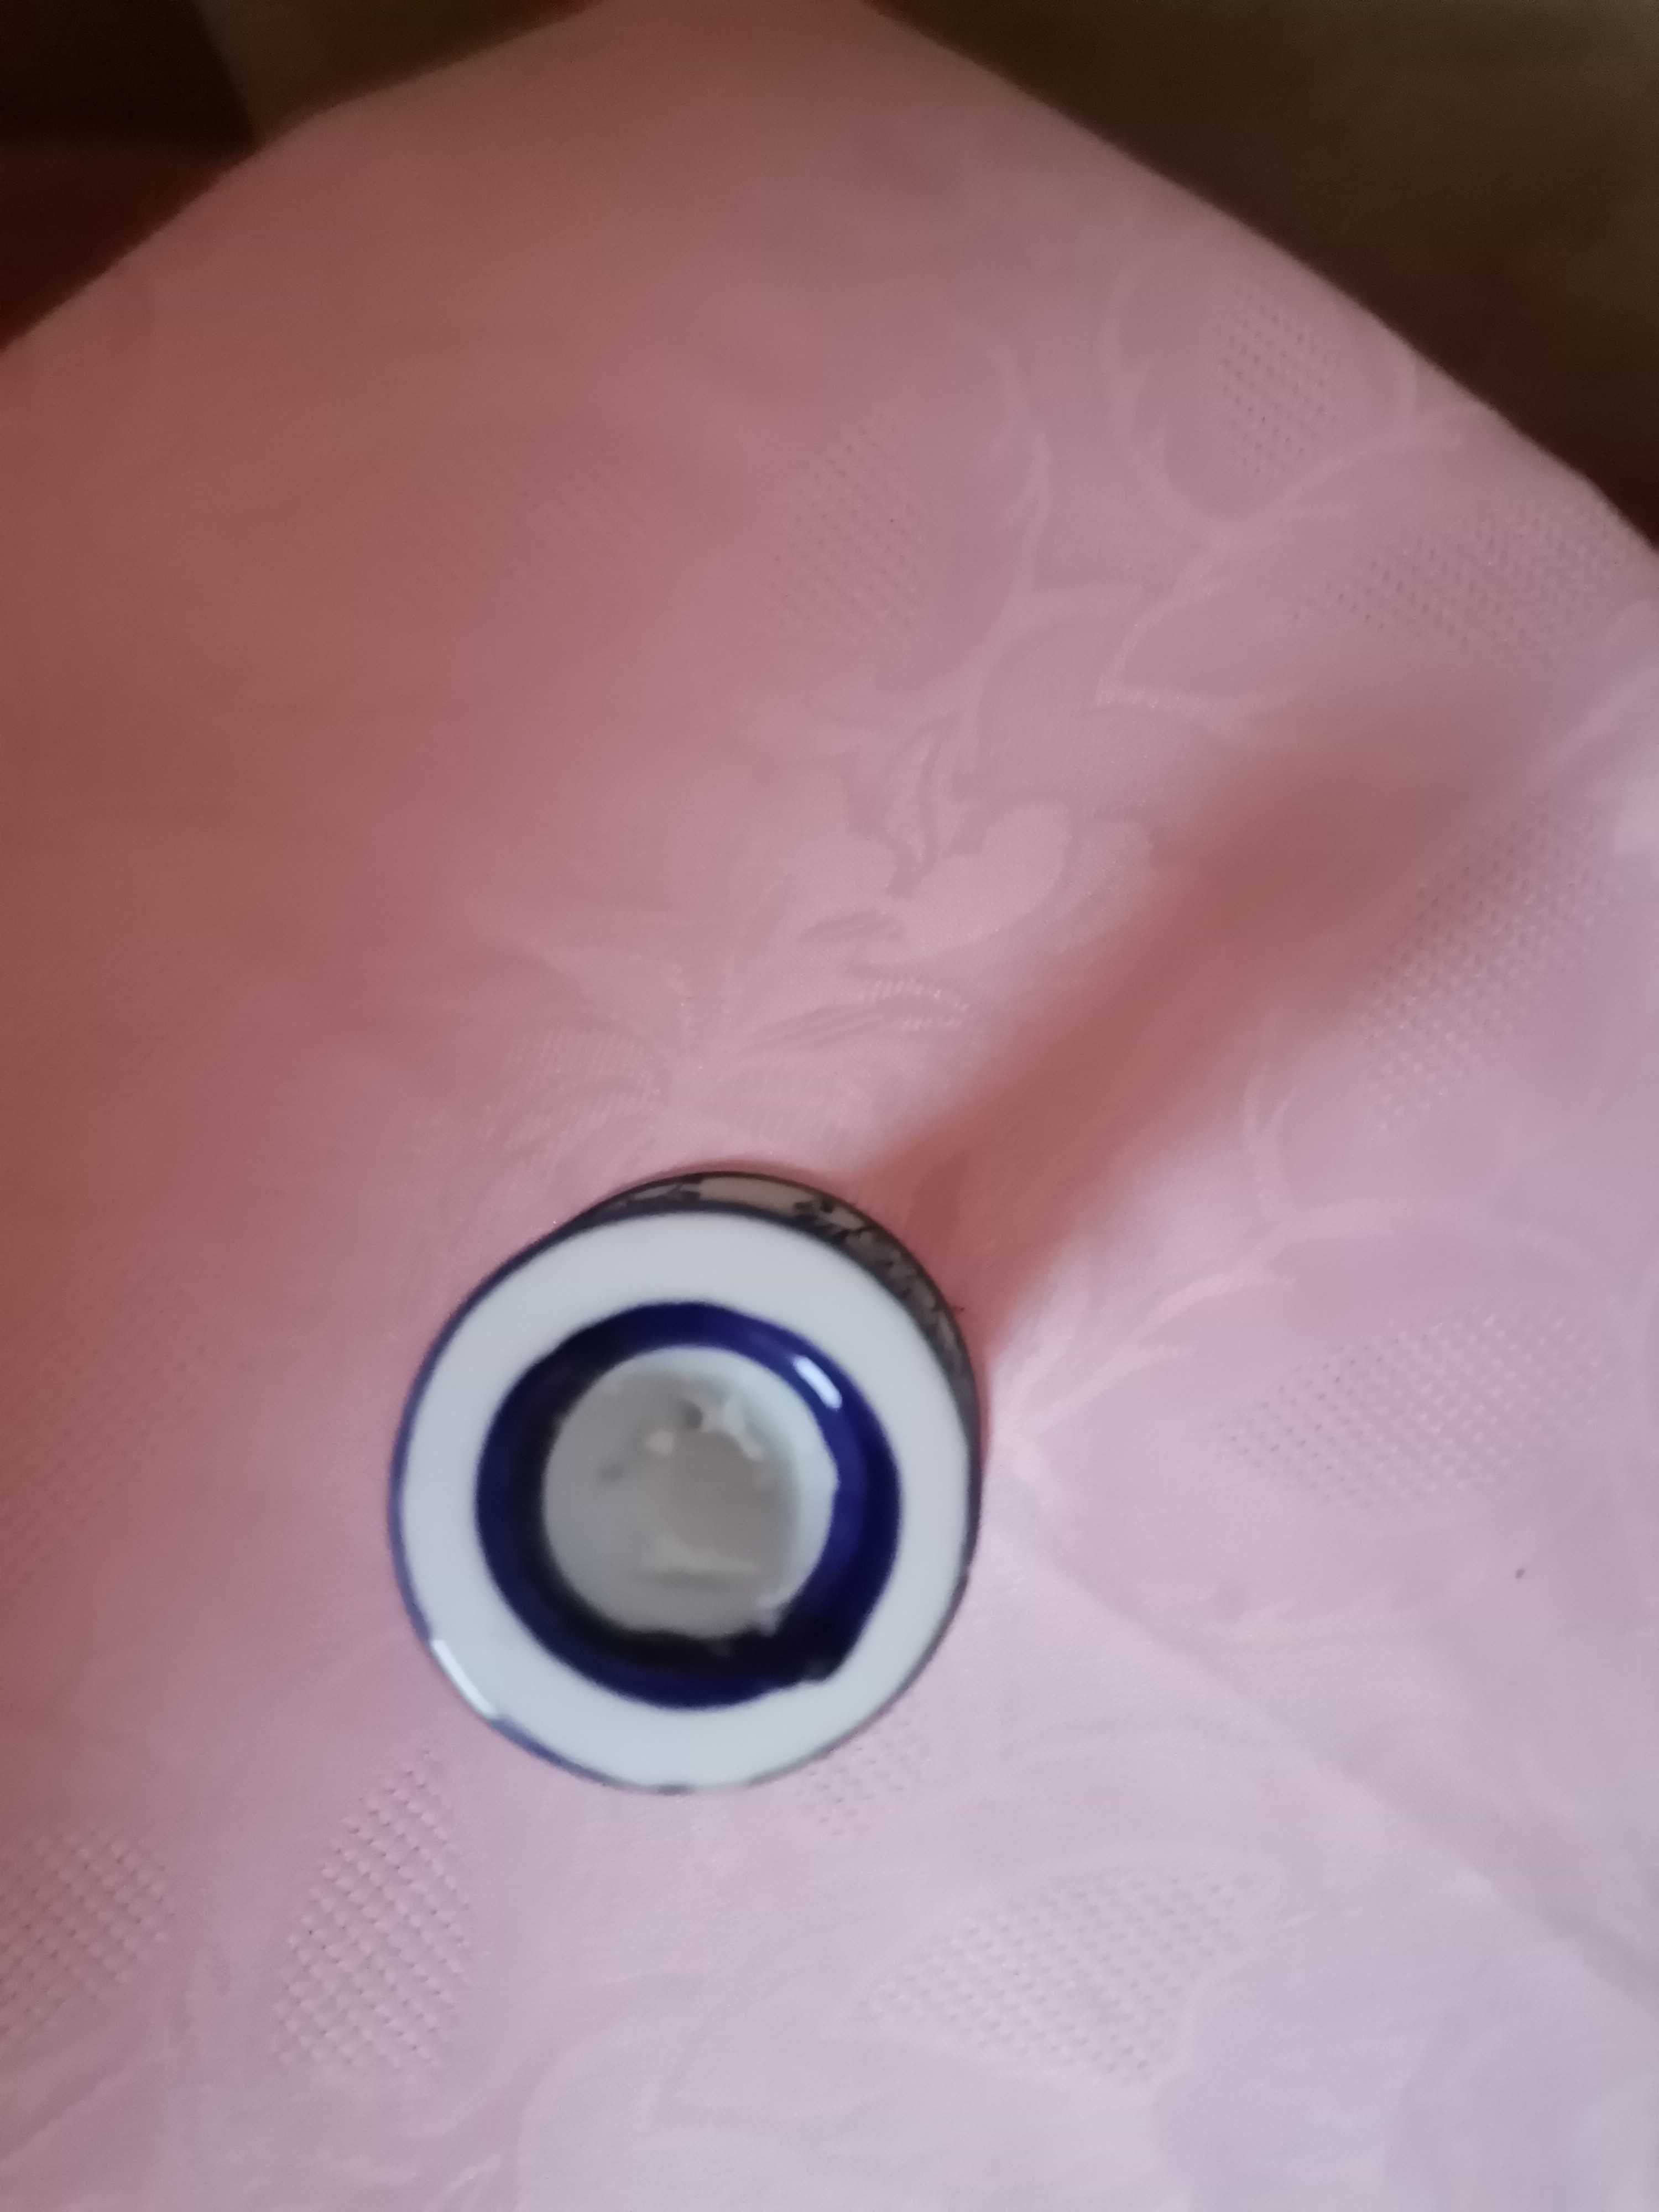 Biało niebieski świecznik ceramiczny